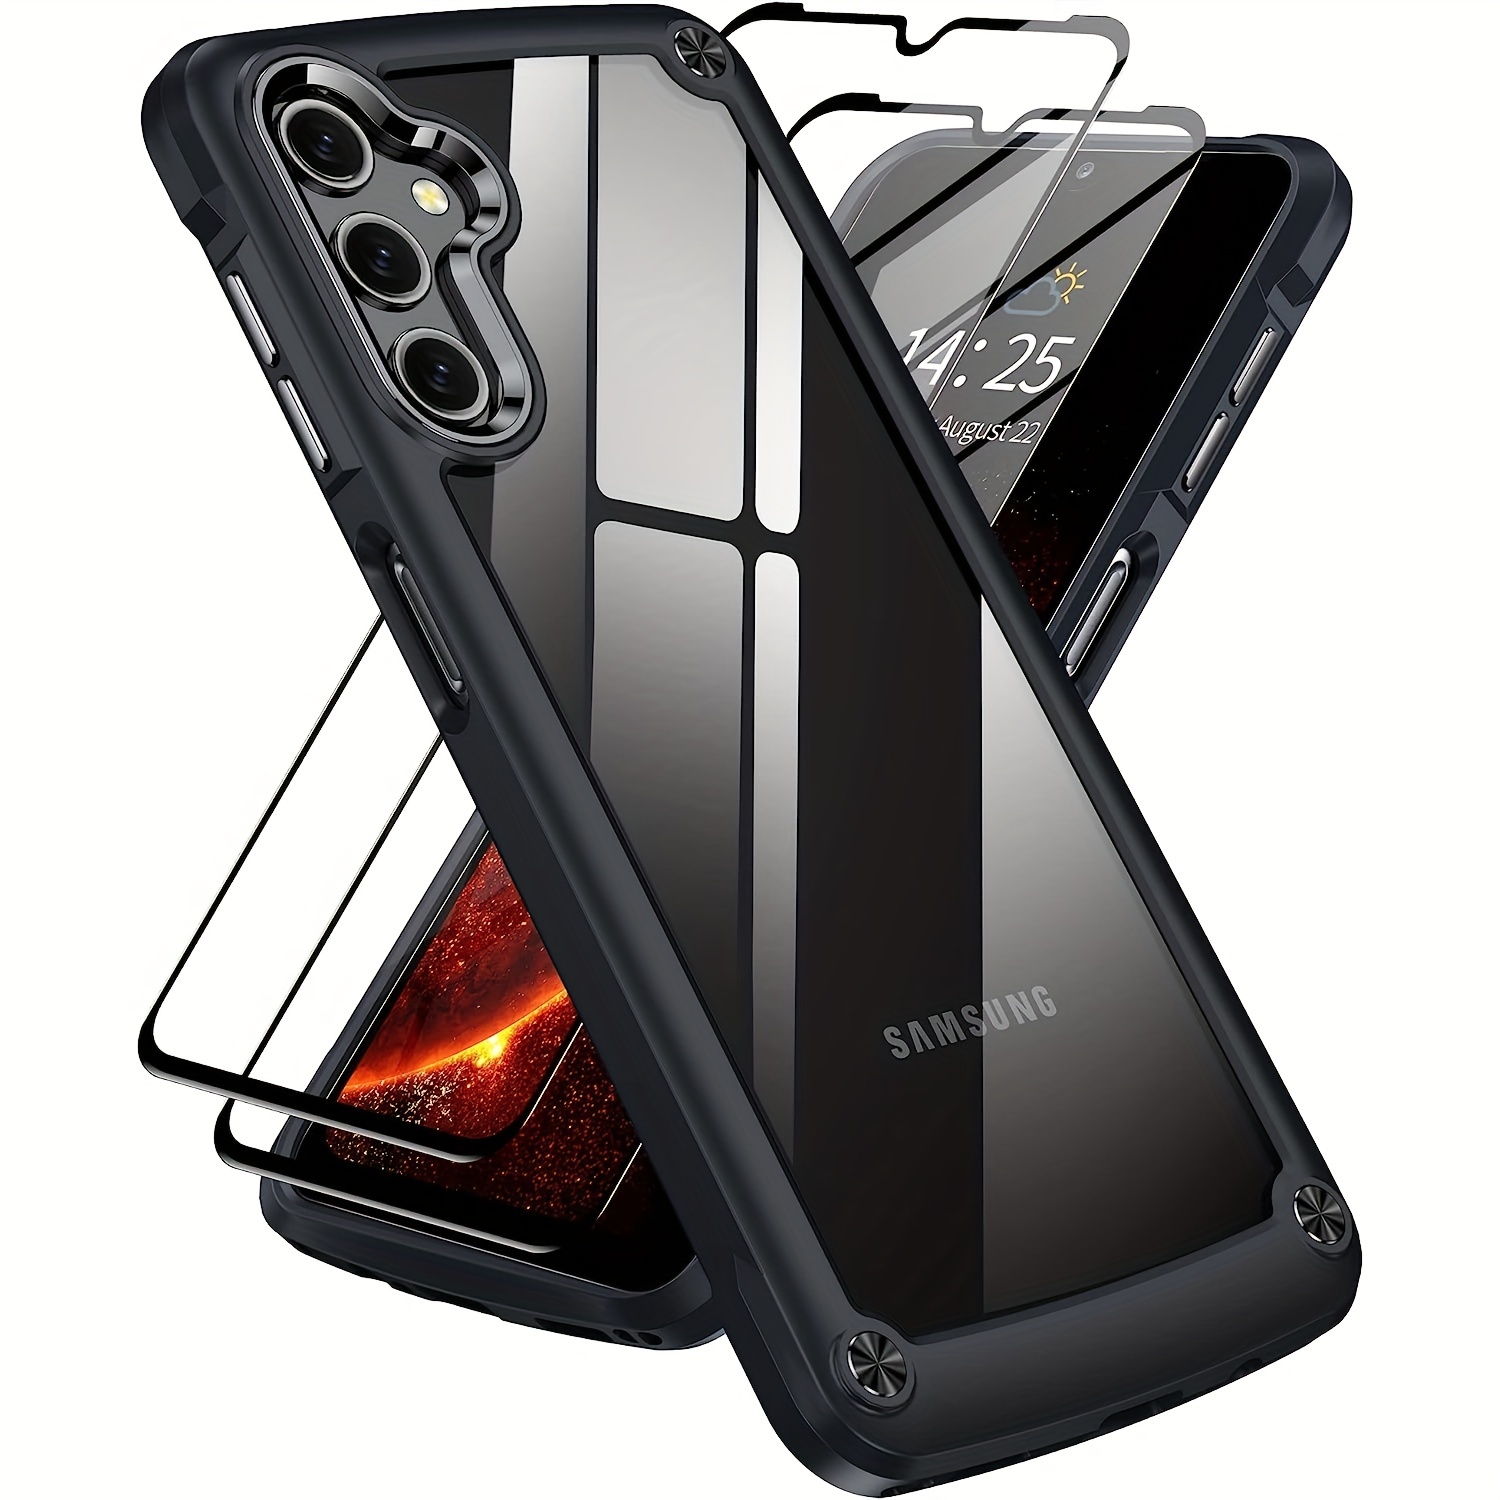 5 En 1] Galaxy A54 5g Case Galaxy A54 5g Case [2 - Temu